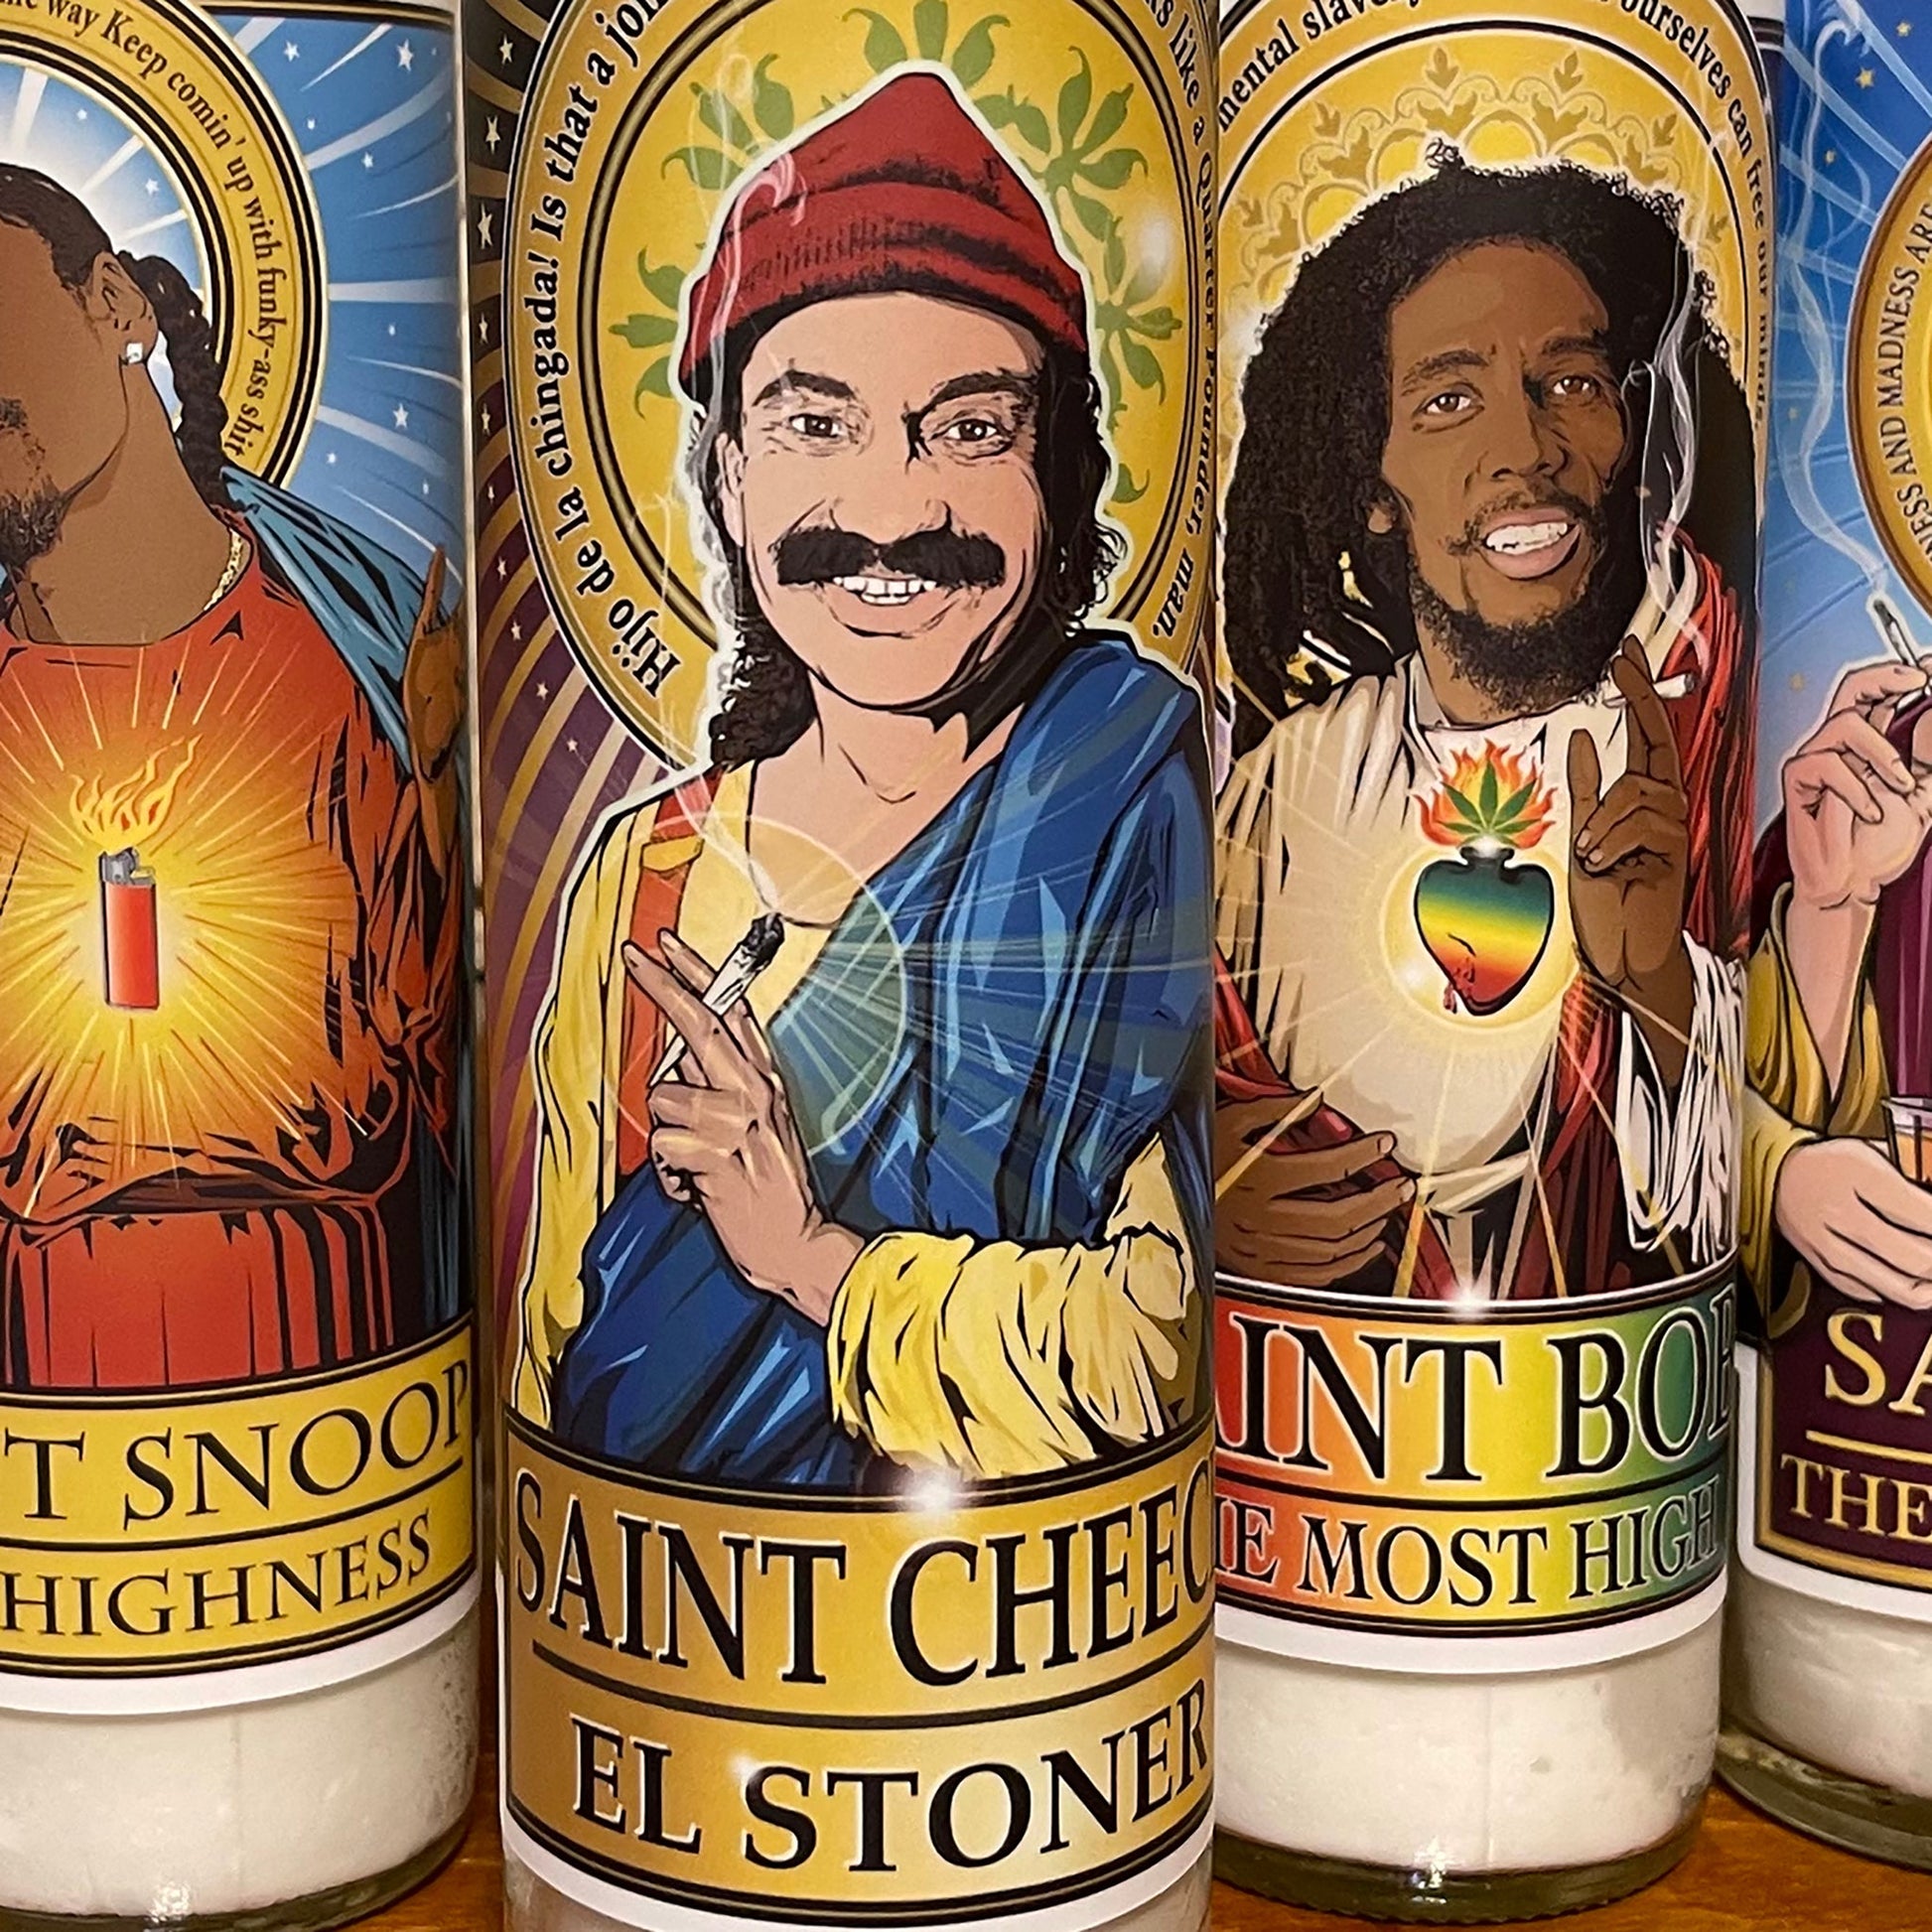 Saint Cheech El Stoner Candle Cleaverandblade.com